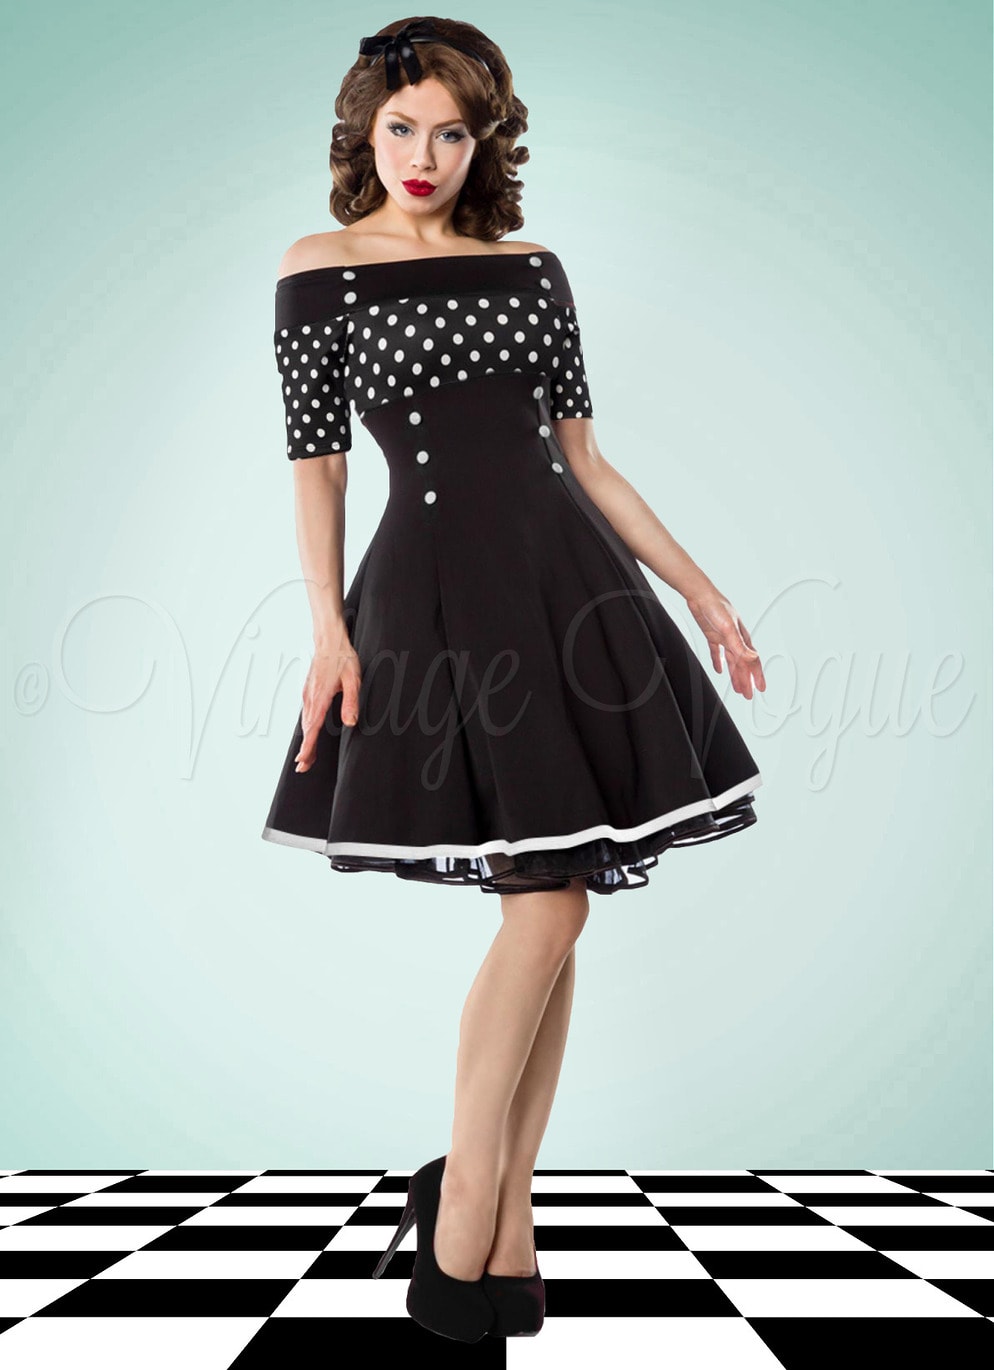 Belsira 50's Retro Rockabilly Swing Kleid mit Polka Dots Punkte in Schwarz 50er Jahre Petticoat Damenkleid Jive Lindy Hop gepunktet tupfen